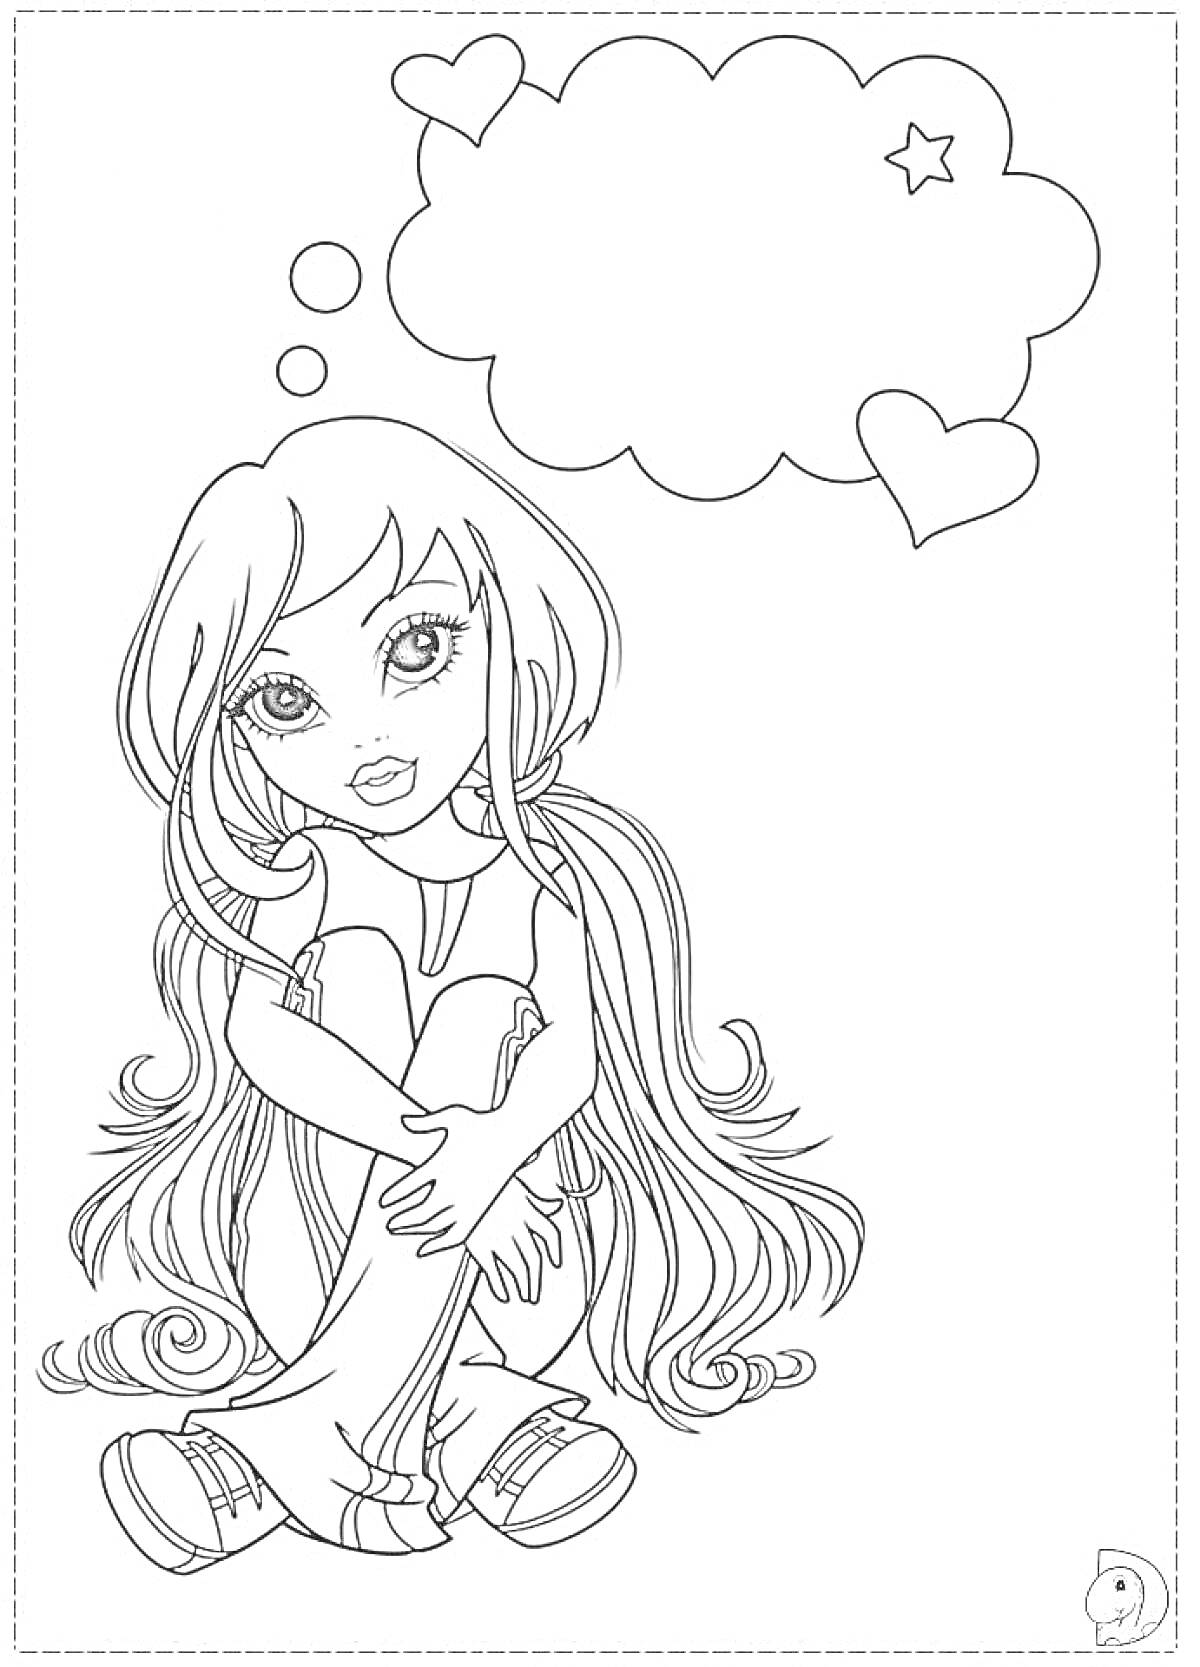 Раскраска Девочка с длинными волосами, сидящая с согнутыми коленями и мечтающая, с облачком мыслей и сердечком.